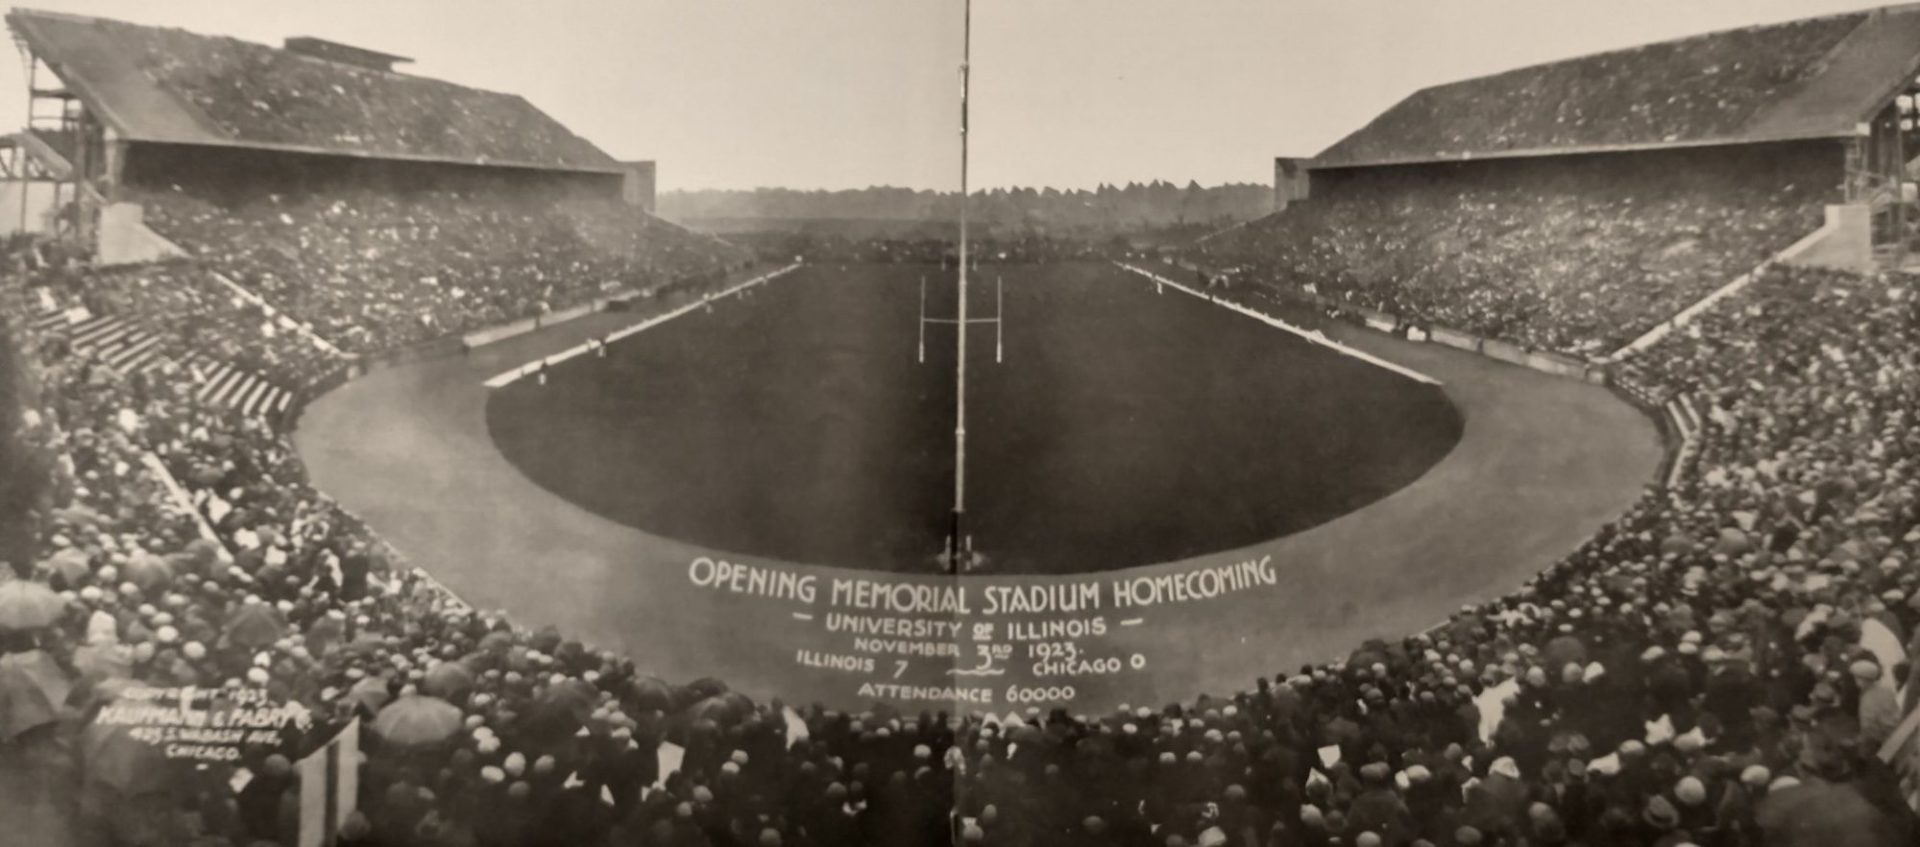 A sepia toned photo of Memorial Stadium in 1923.